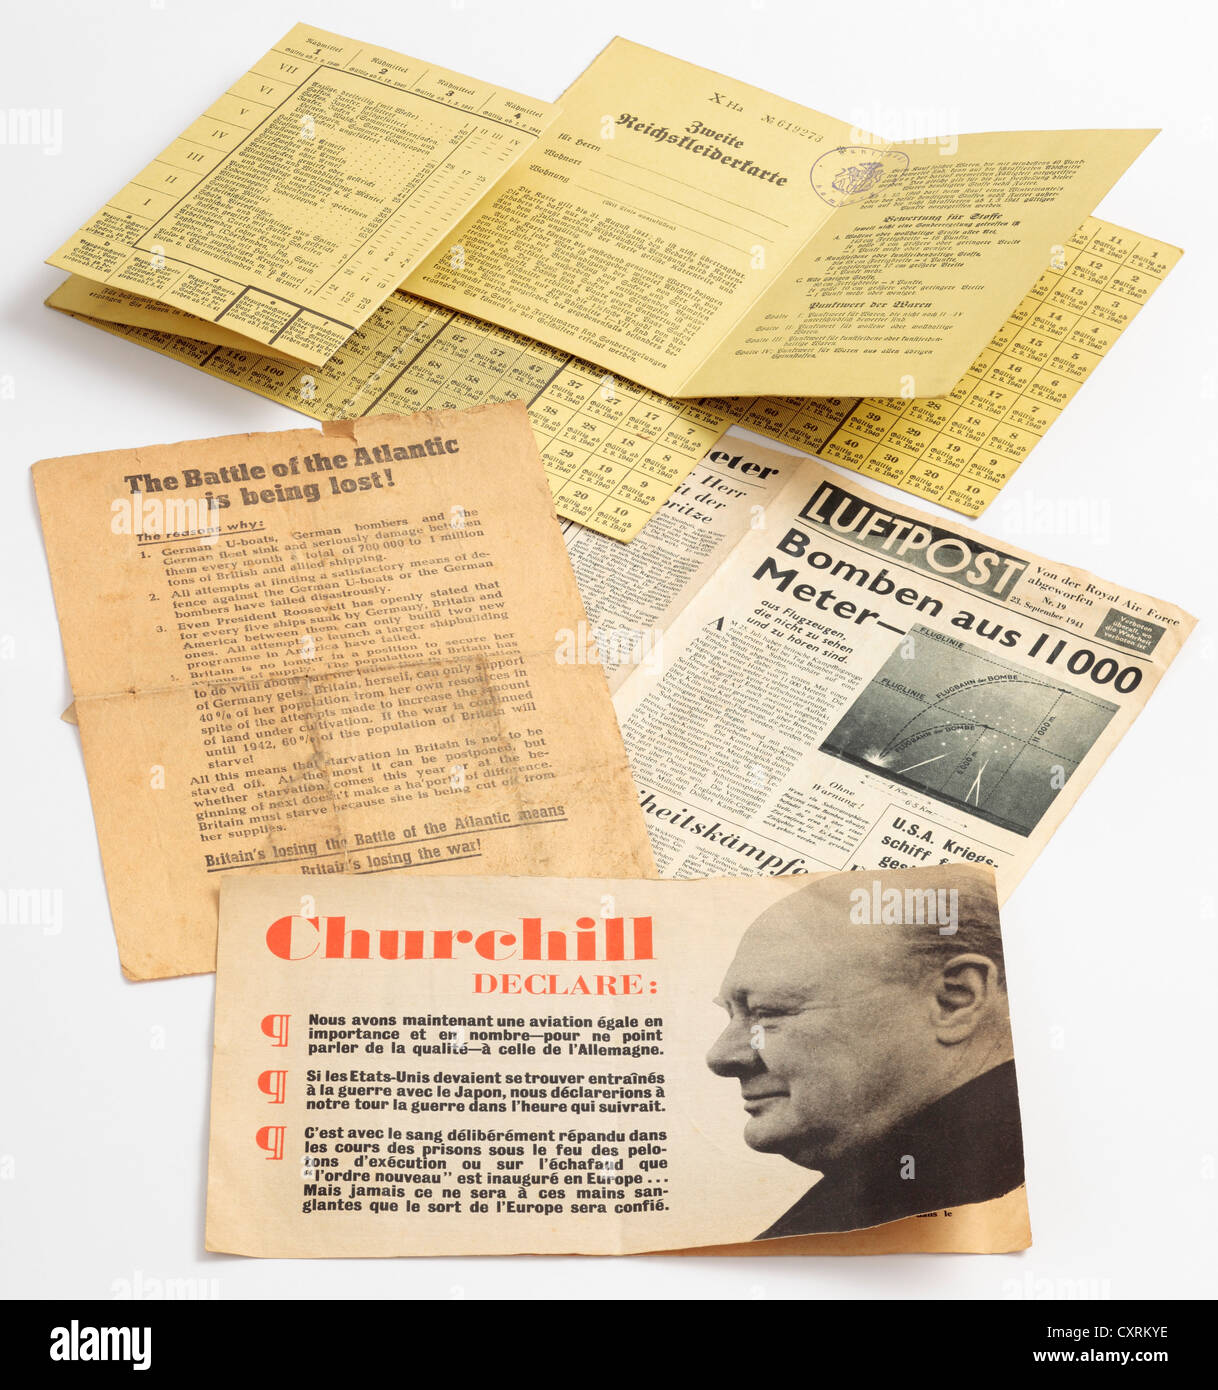 La propagande de guerre britannique et allemande, la contrefaçon des livres et dépliants publicitaires ration de WW2 a diminué, passant de l'air. Banque D'Images